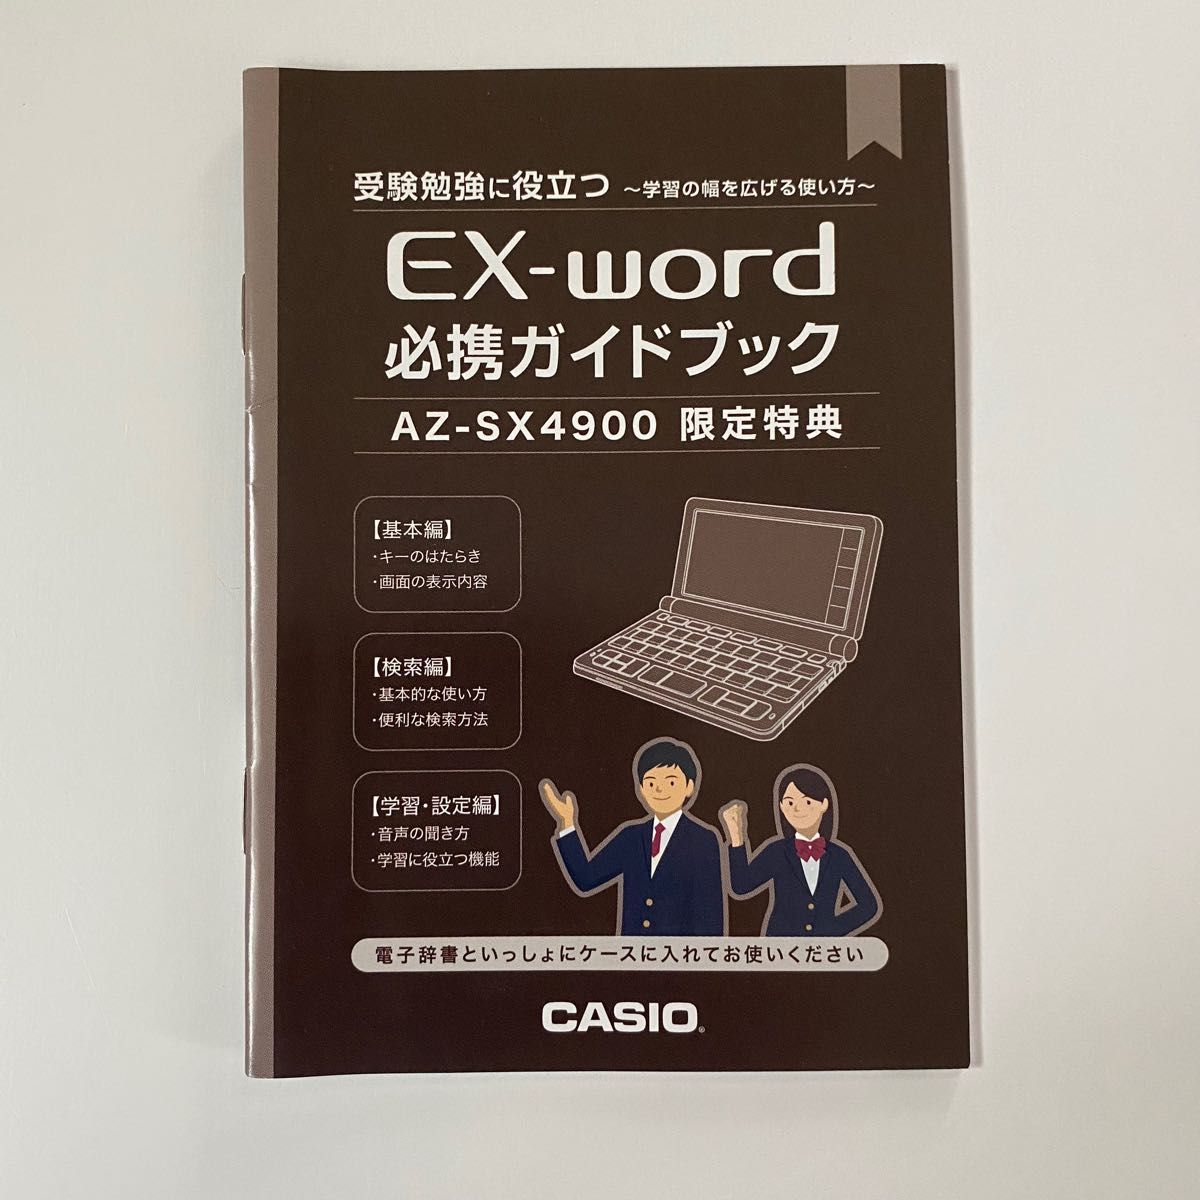 電子辞書 AZ-SX4900 CASIO ex-word - タブレット